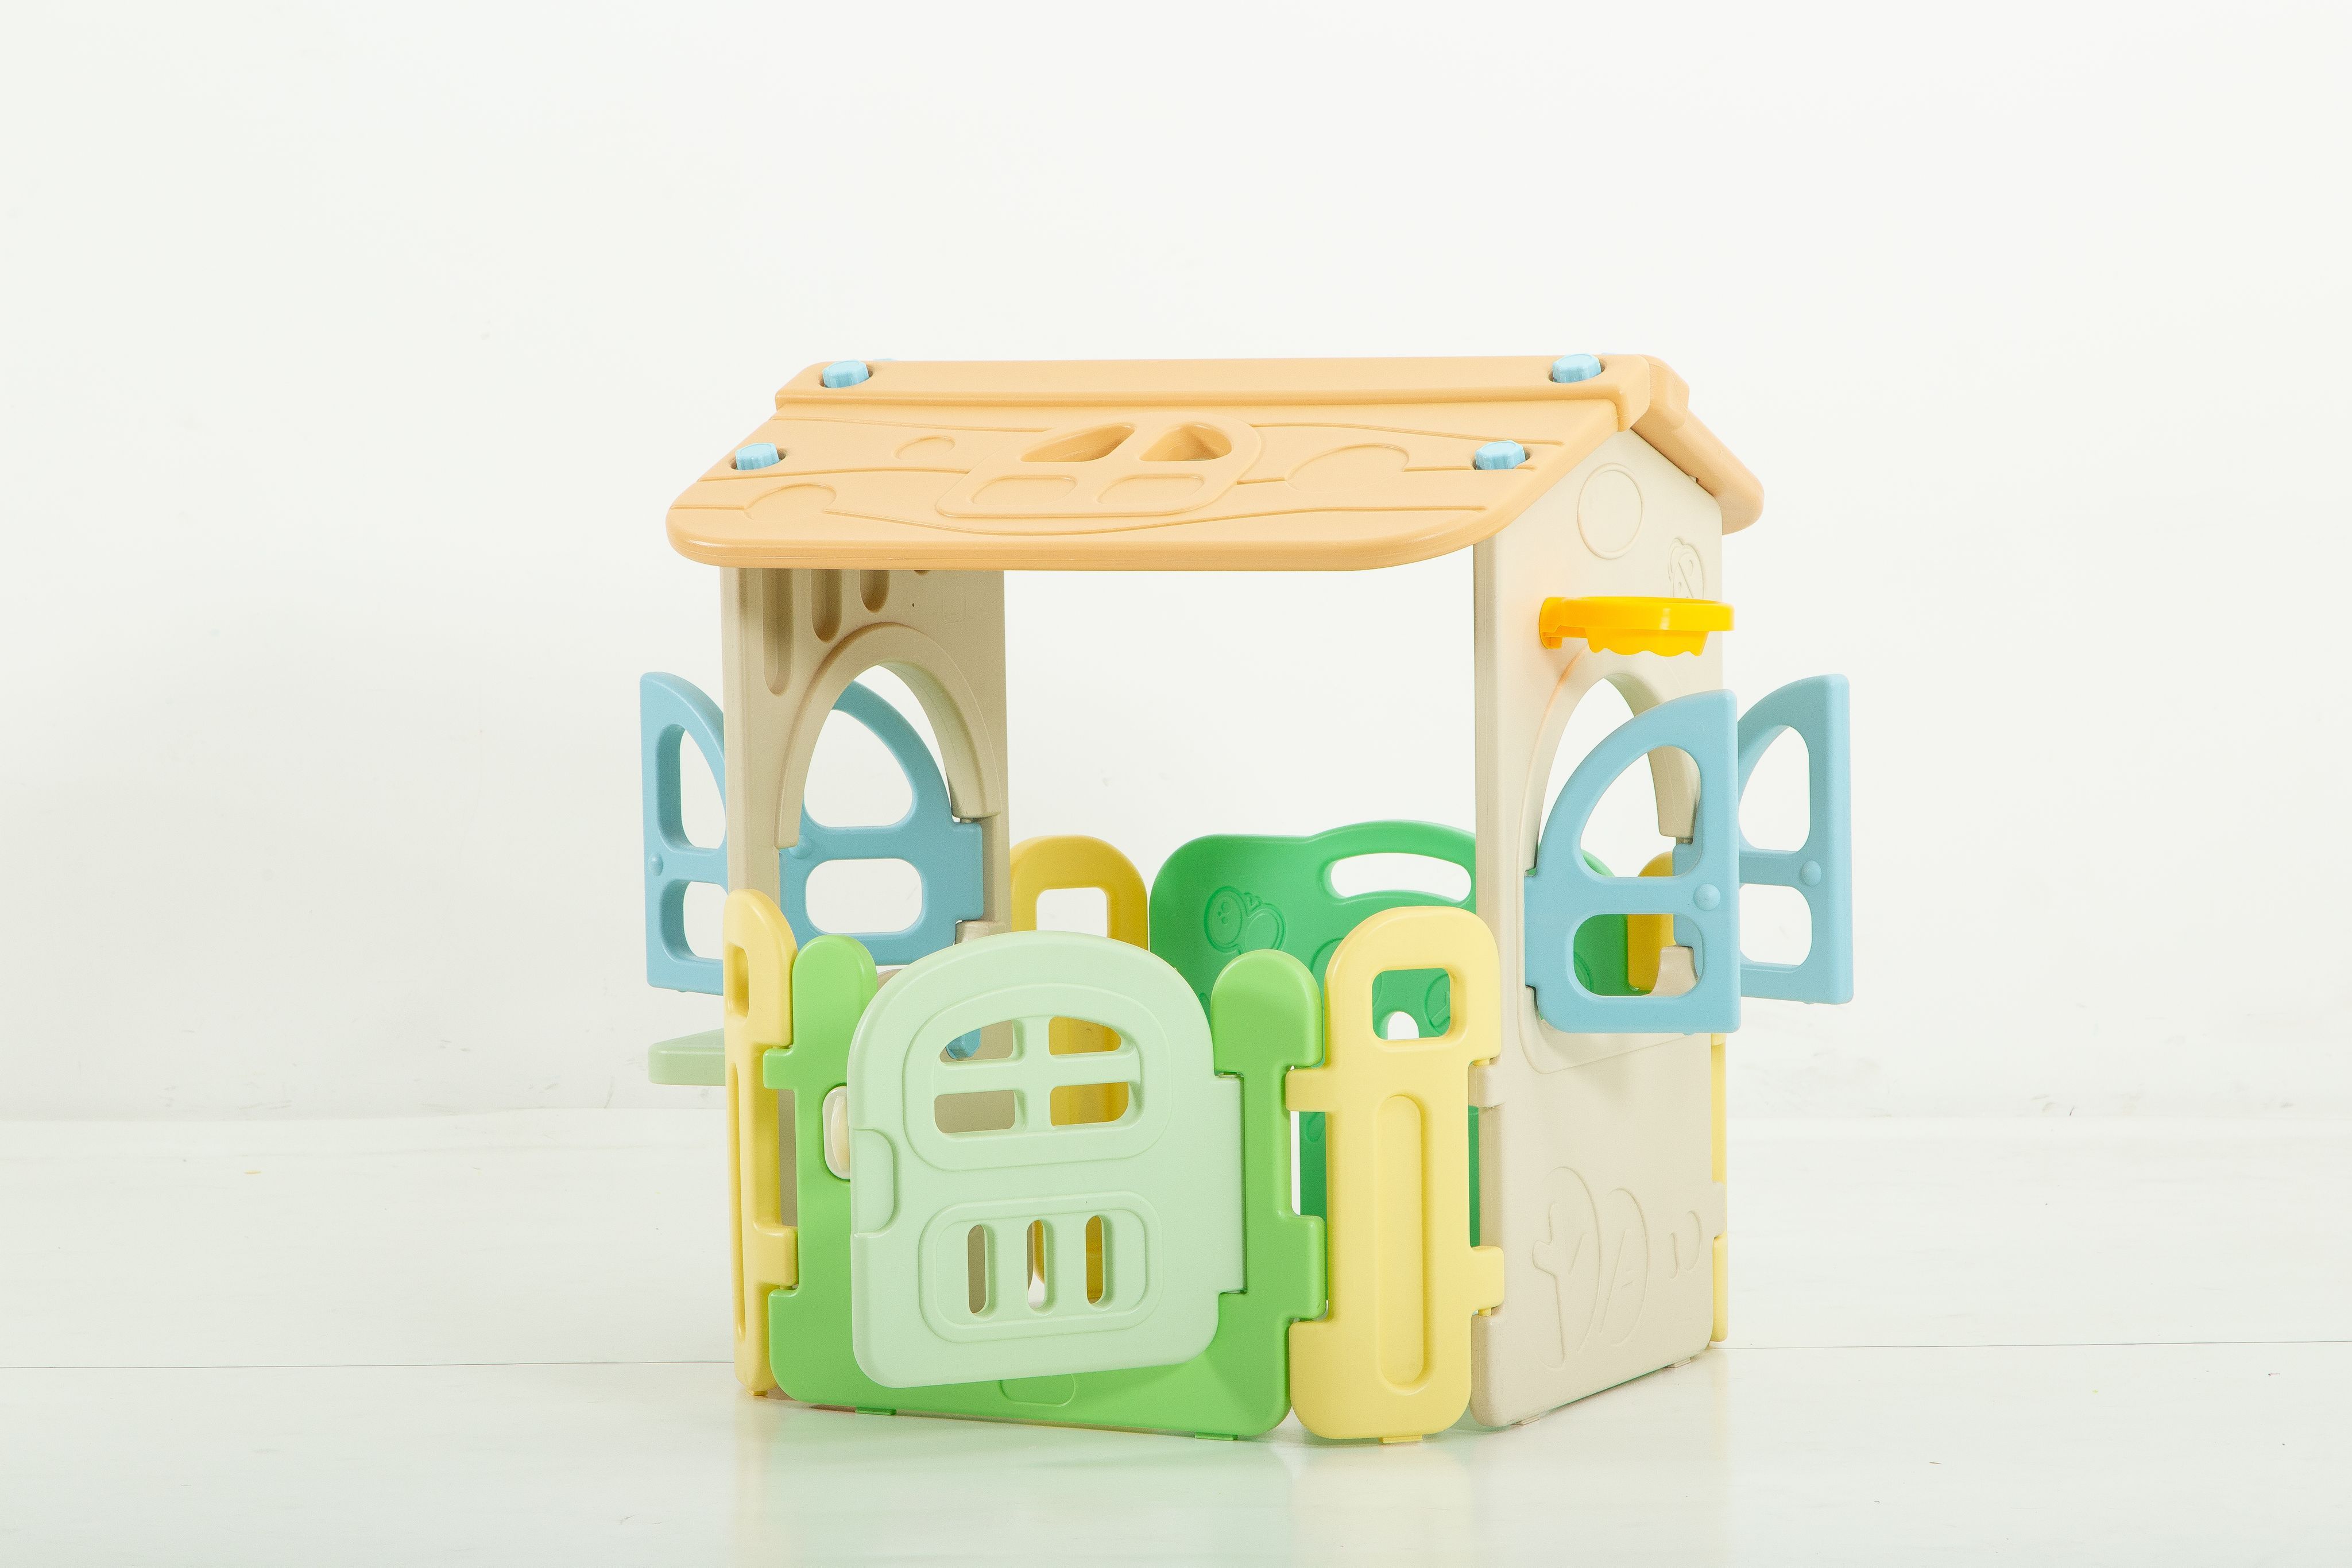 Манеж домик игровой детский UNIX Kids Village 2 в 1 складной, пластиковый, для дома, улицы стул детский пластиковый зеленый